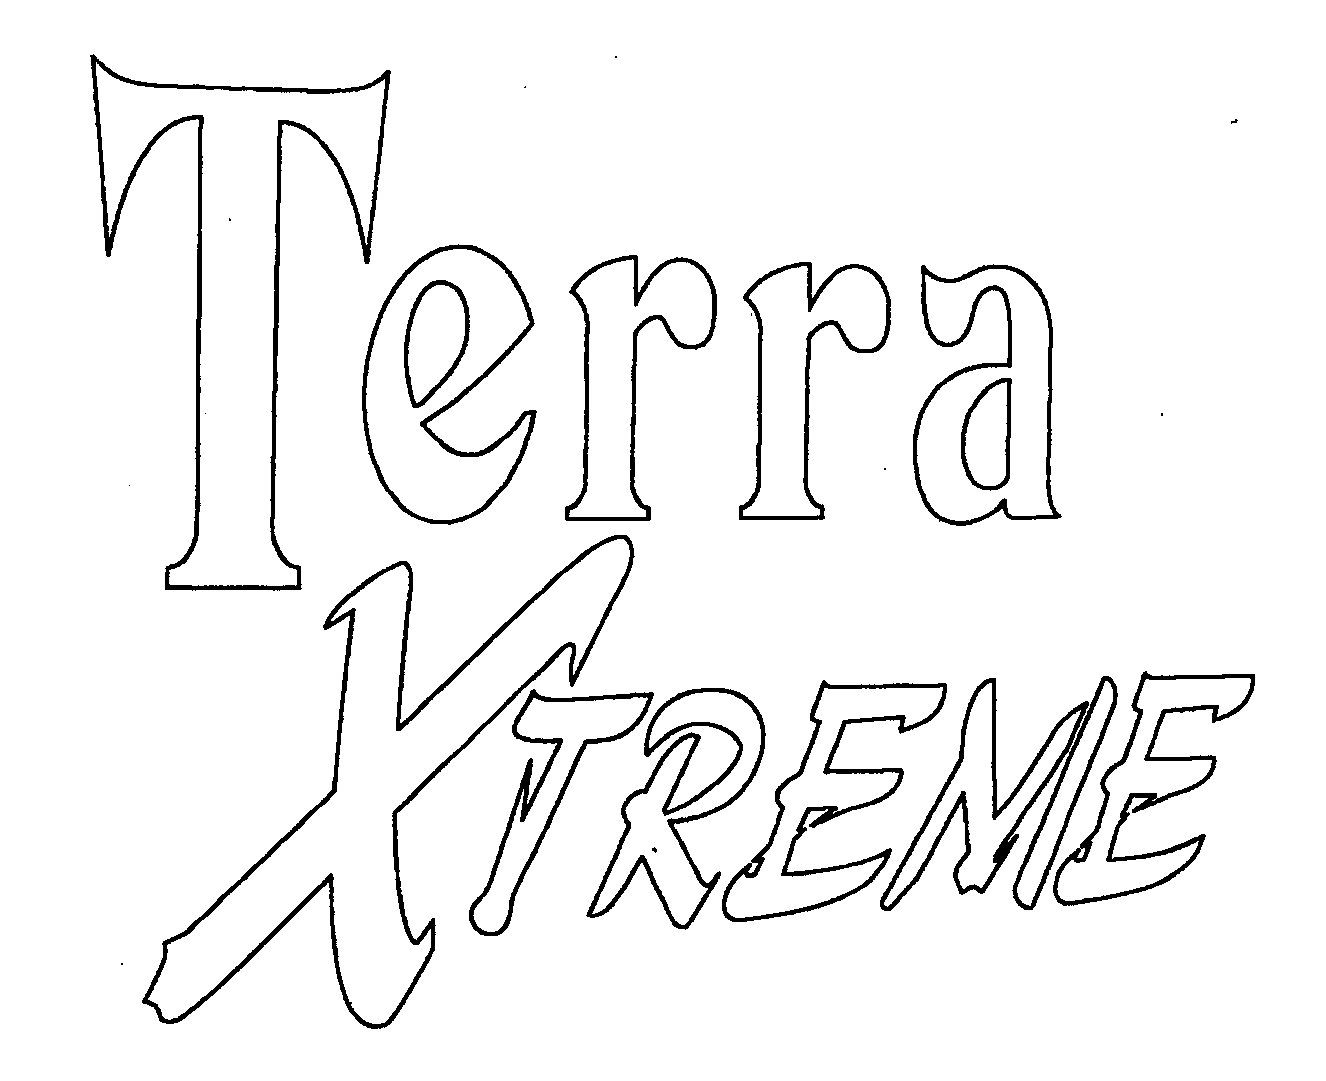  TERRA XTREME